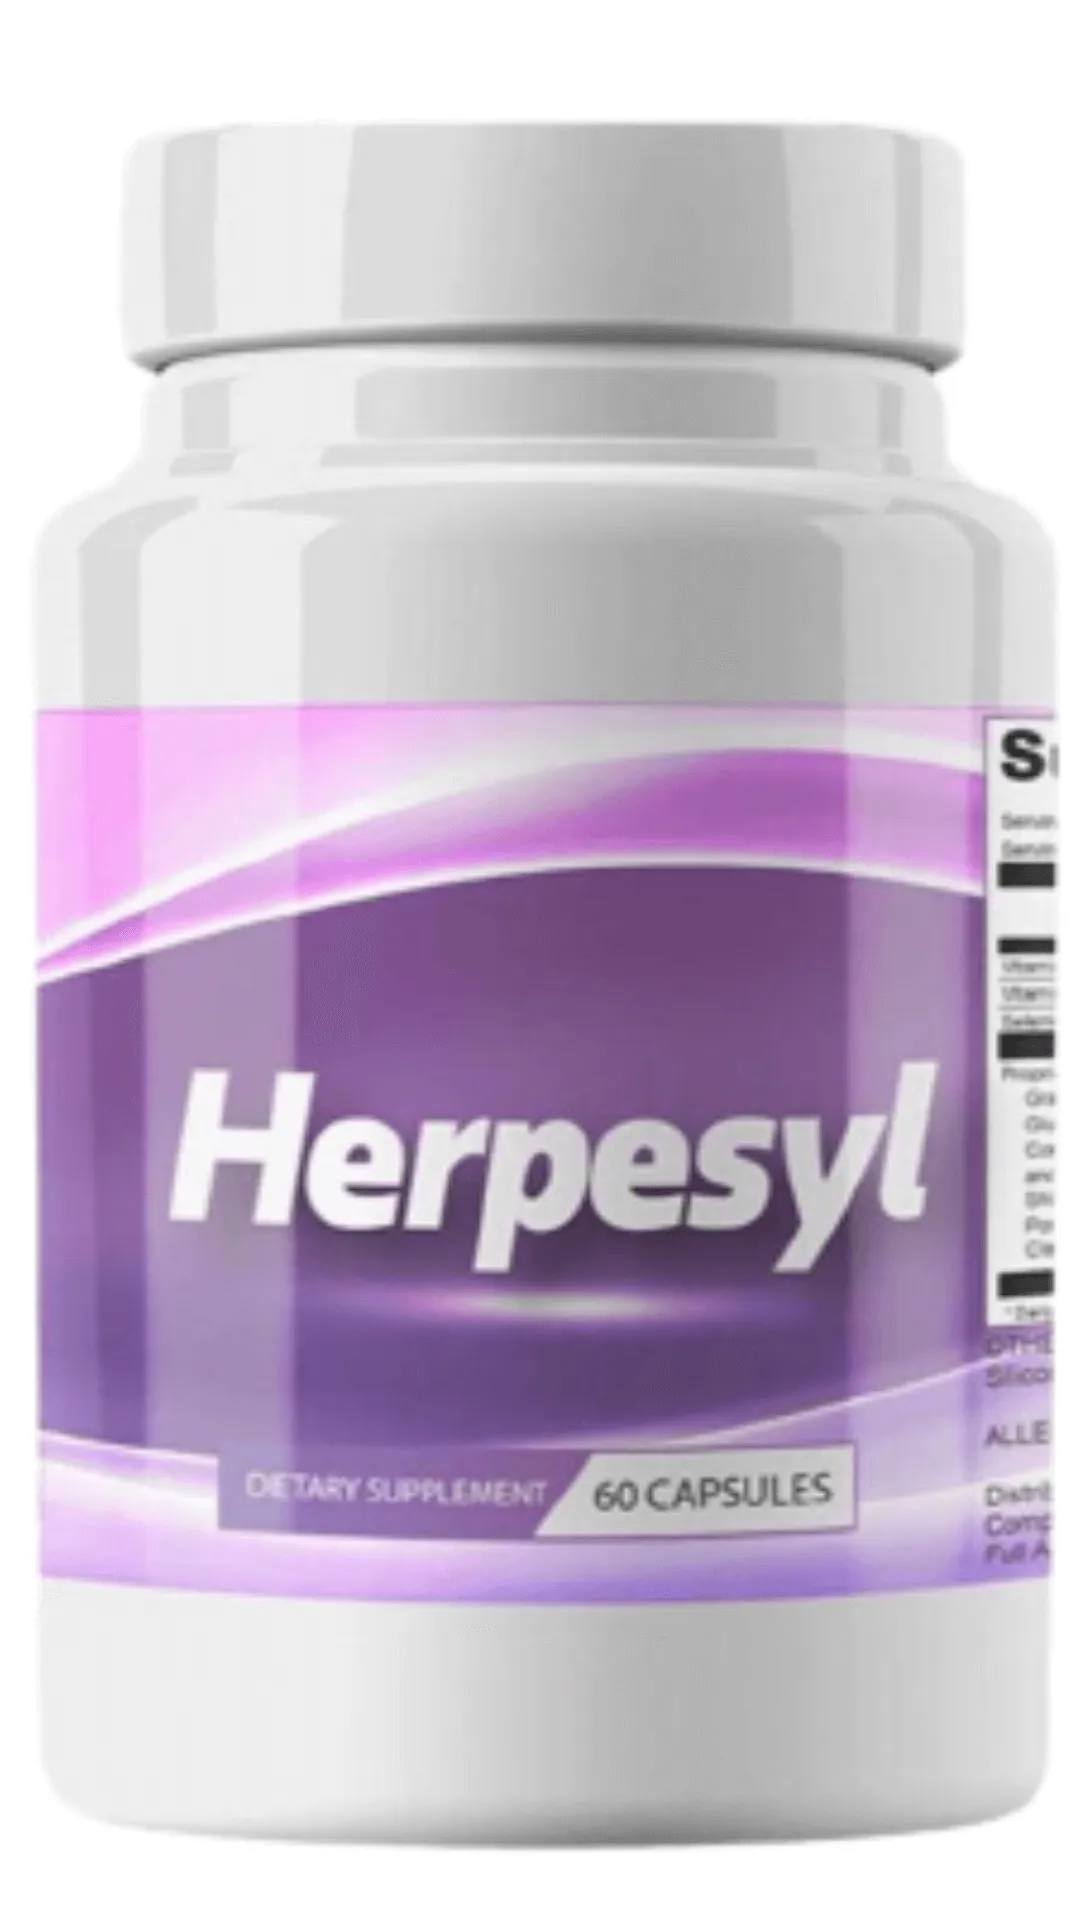 Herpesyl Supplement bottle buy